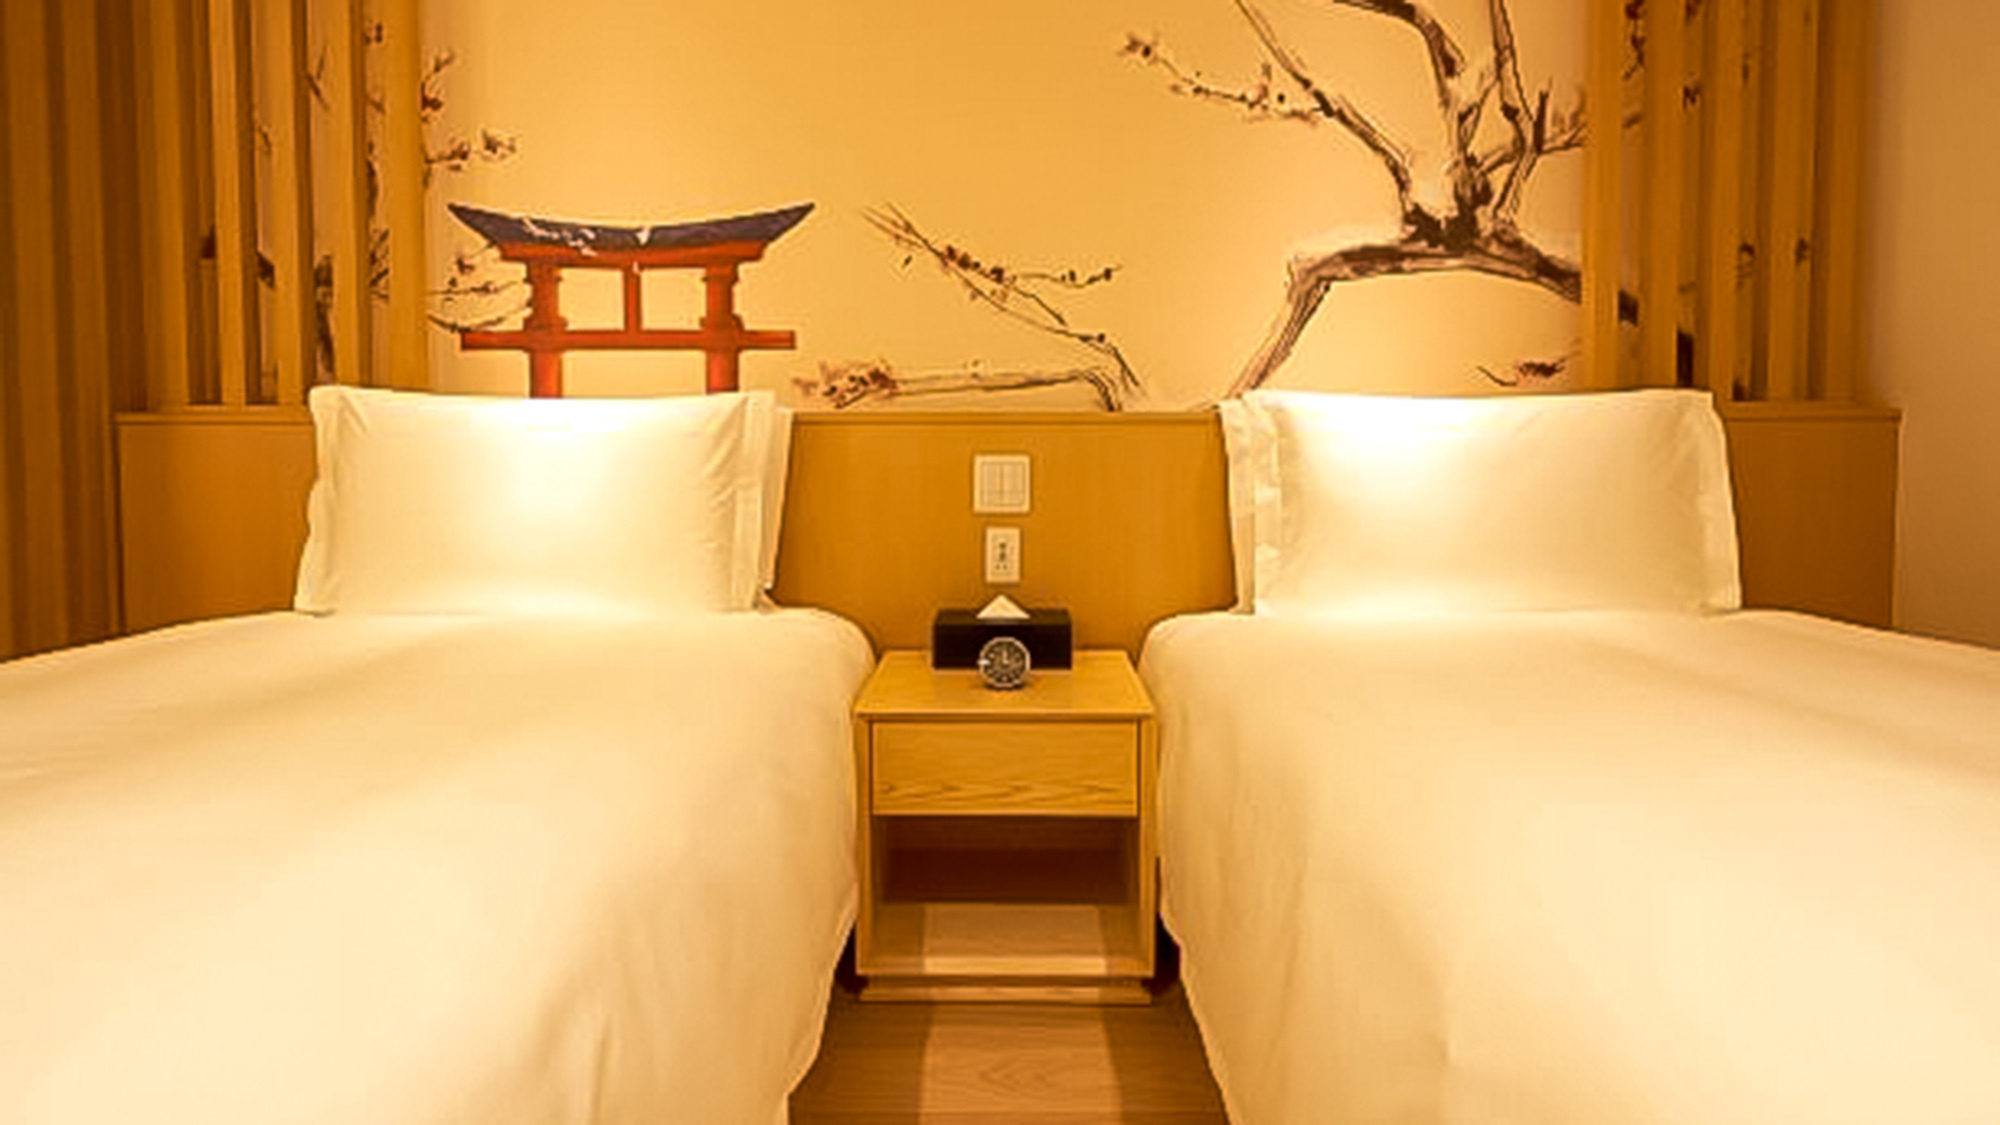 ・【スタンダード一例】日本の伝統美があしらわれた和洋室